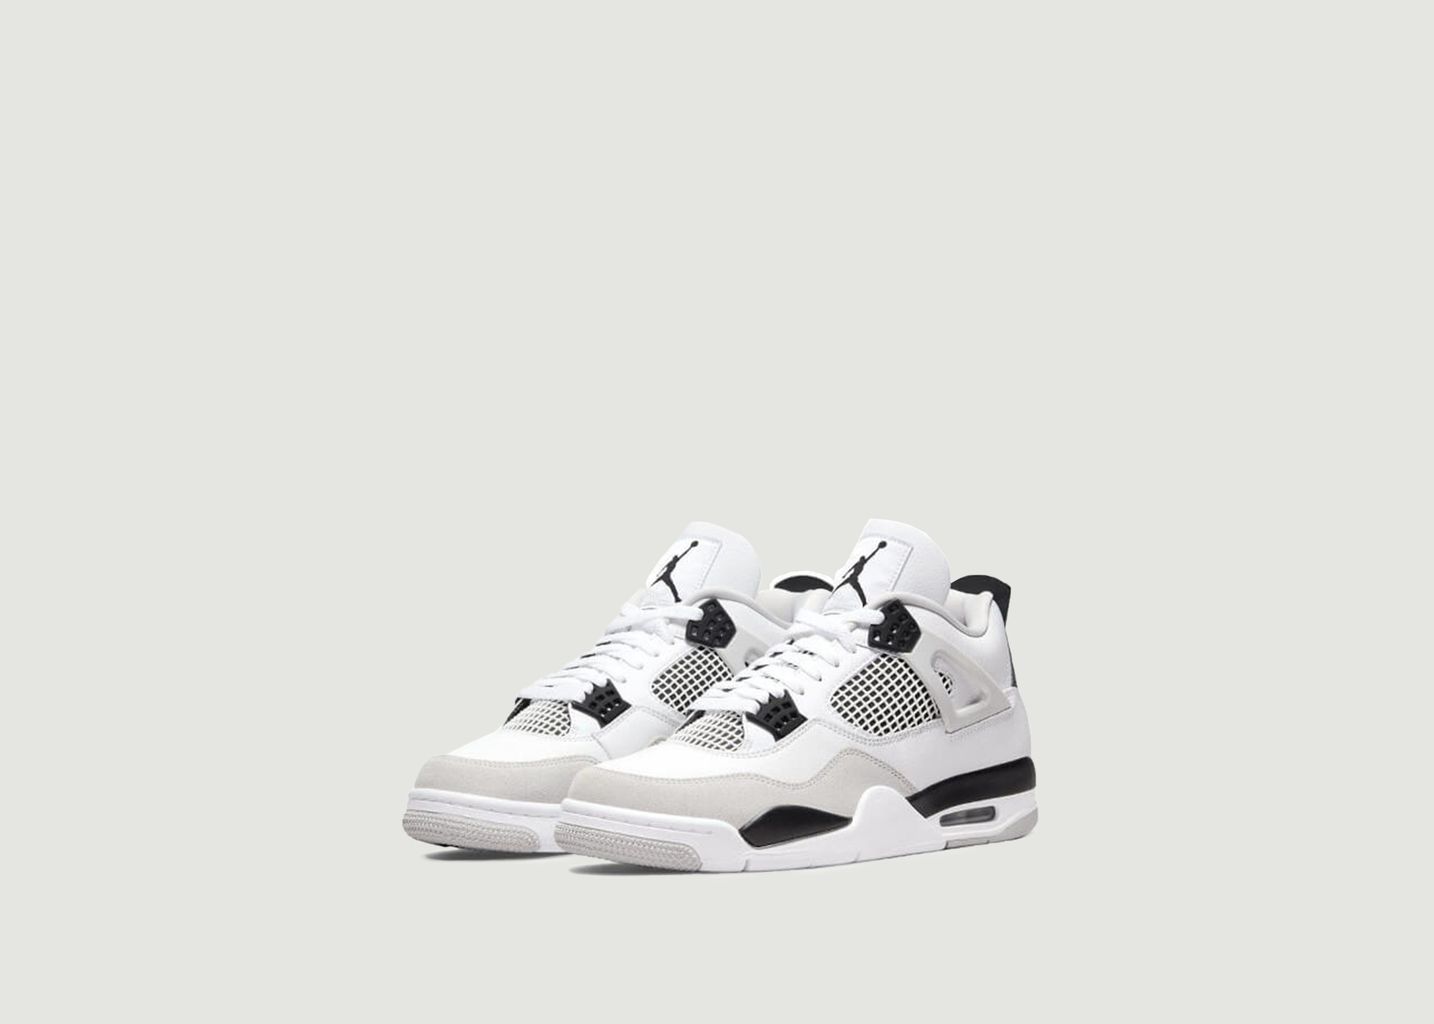 Air Jordan 4 Military Black (GS) Sneakers - Nike